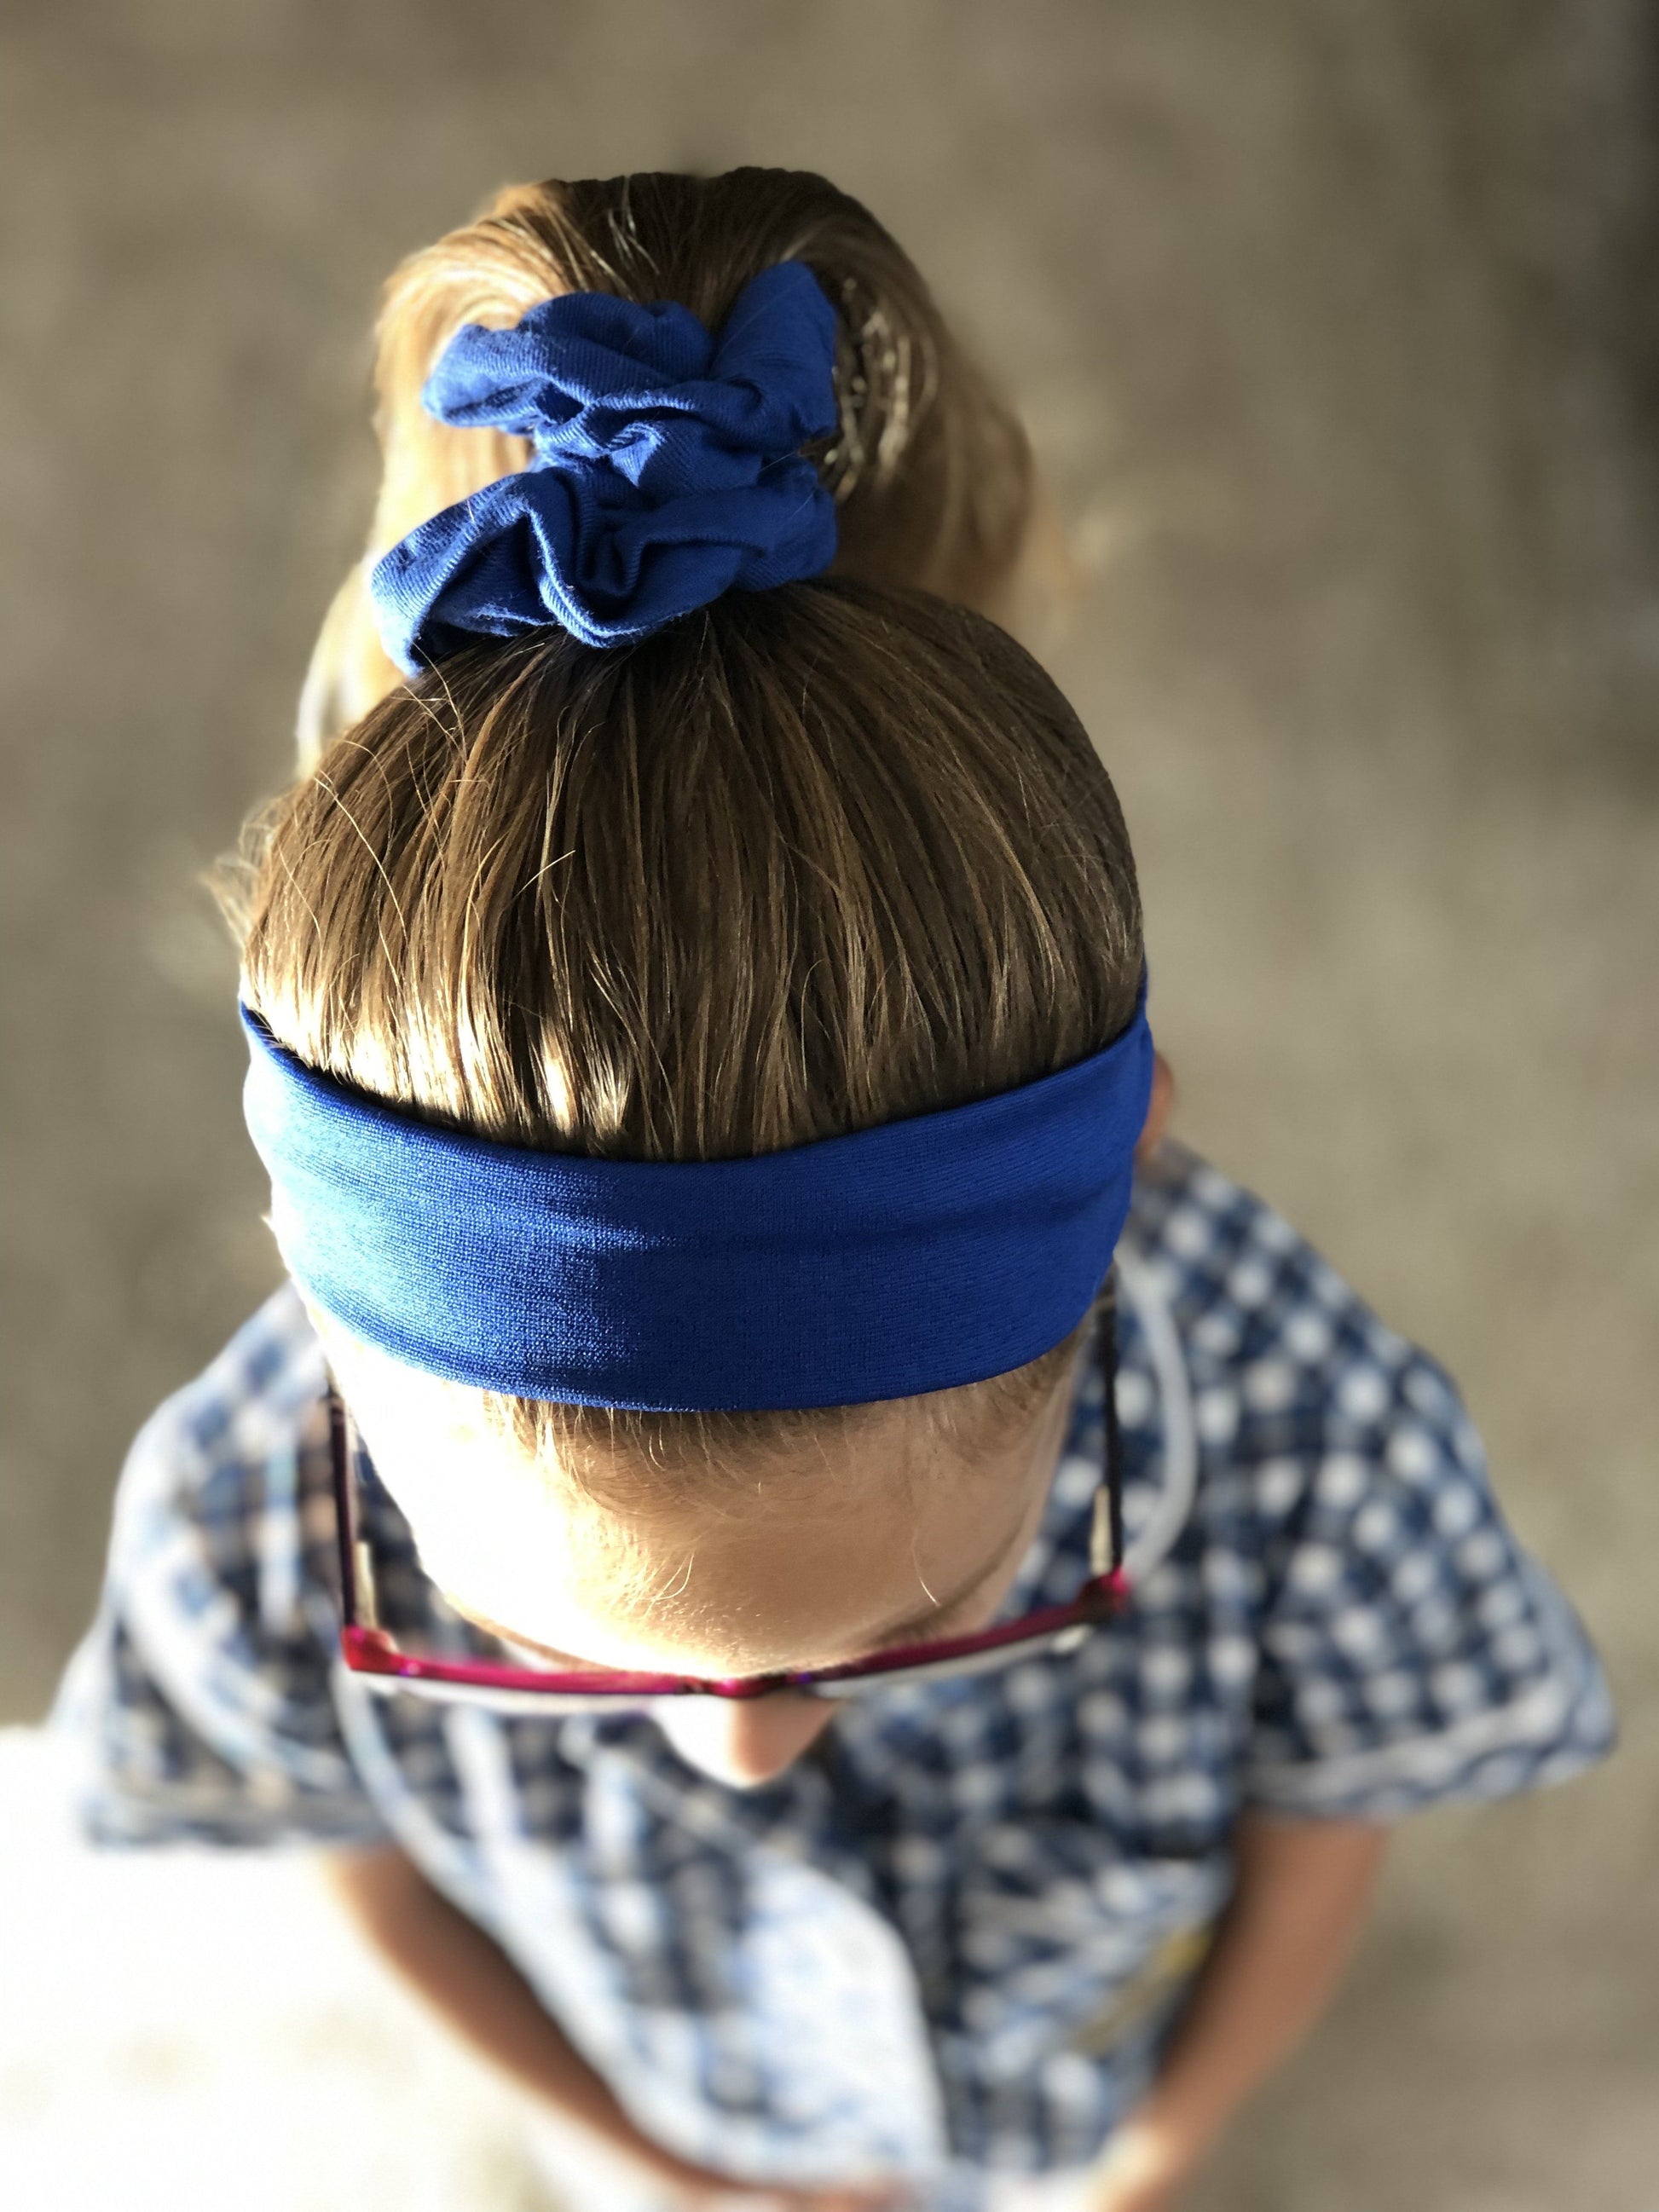 https://www.ponytailsandfairytales.com.au/cdn/shop/products/stretch-headband-for-school-sport-yoga-headbands-school-ponytails-ponytails-and-fairytales-529402.jpg?v=1645681733&width=1946